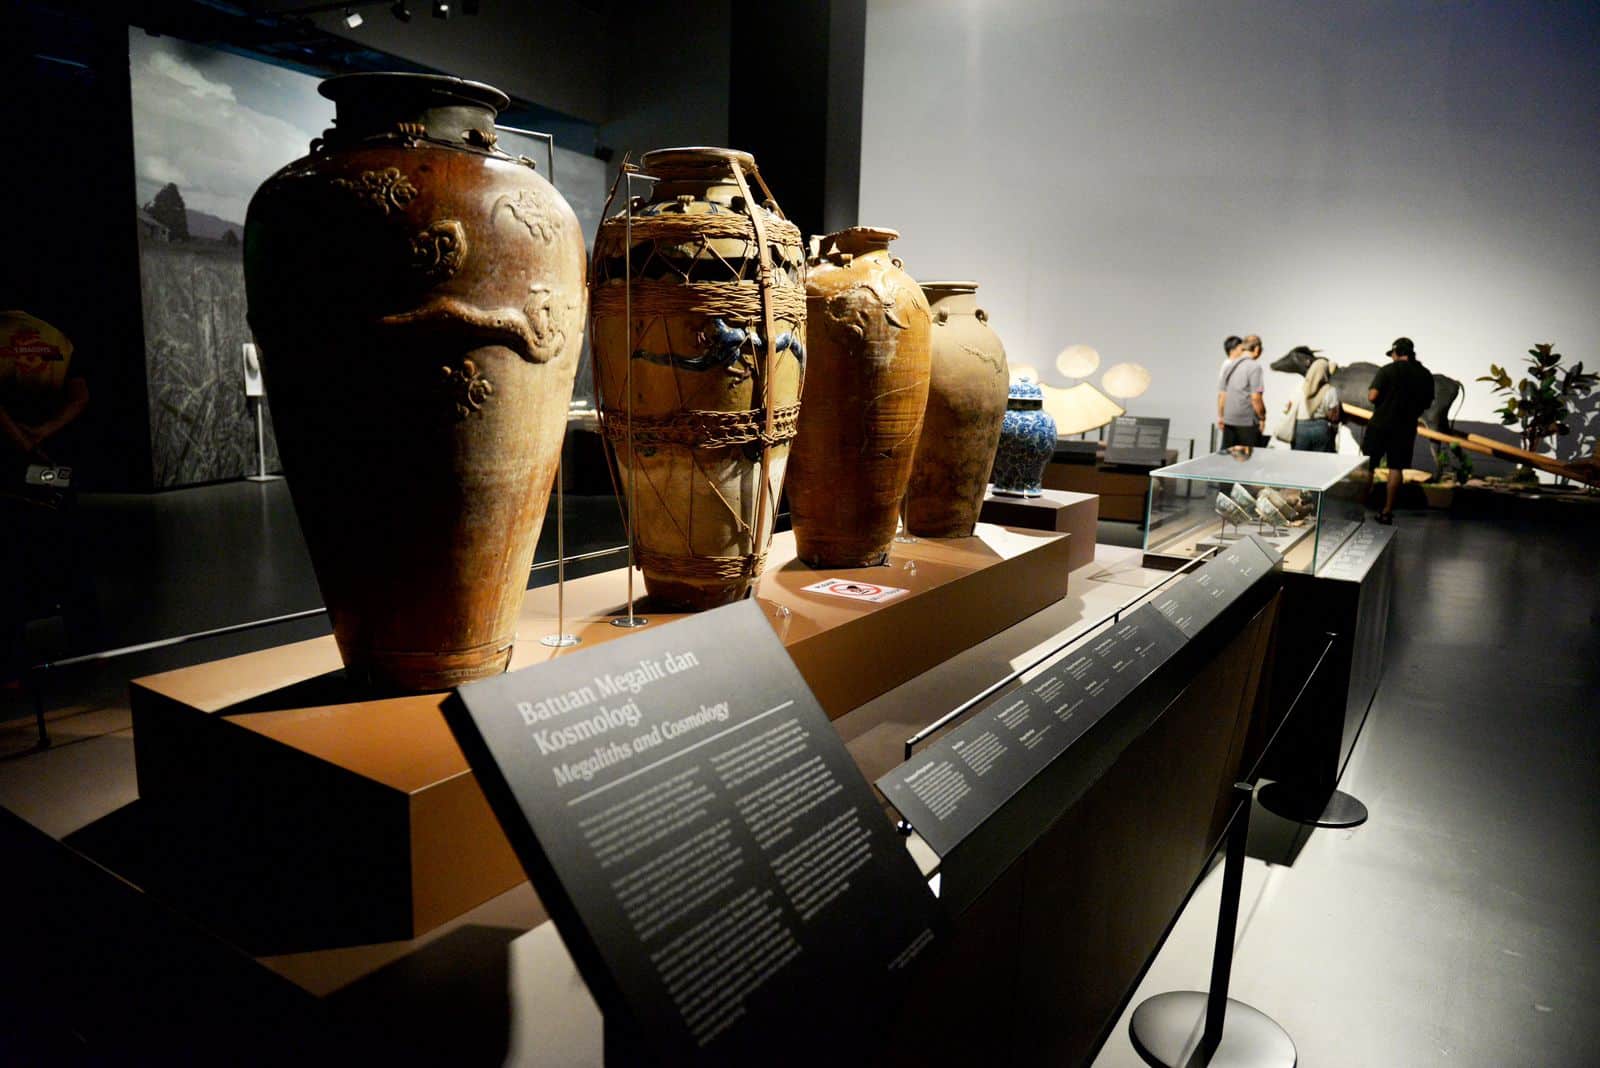 Berbagai benda atau artefak di Borneo Culture Museum menyimpan berbagai sejarah peradaban berabad-abad silam. (Foto: Jauhari)